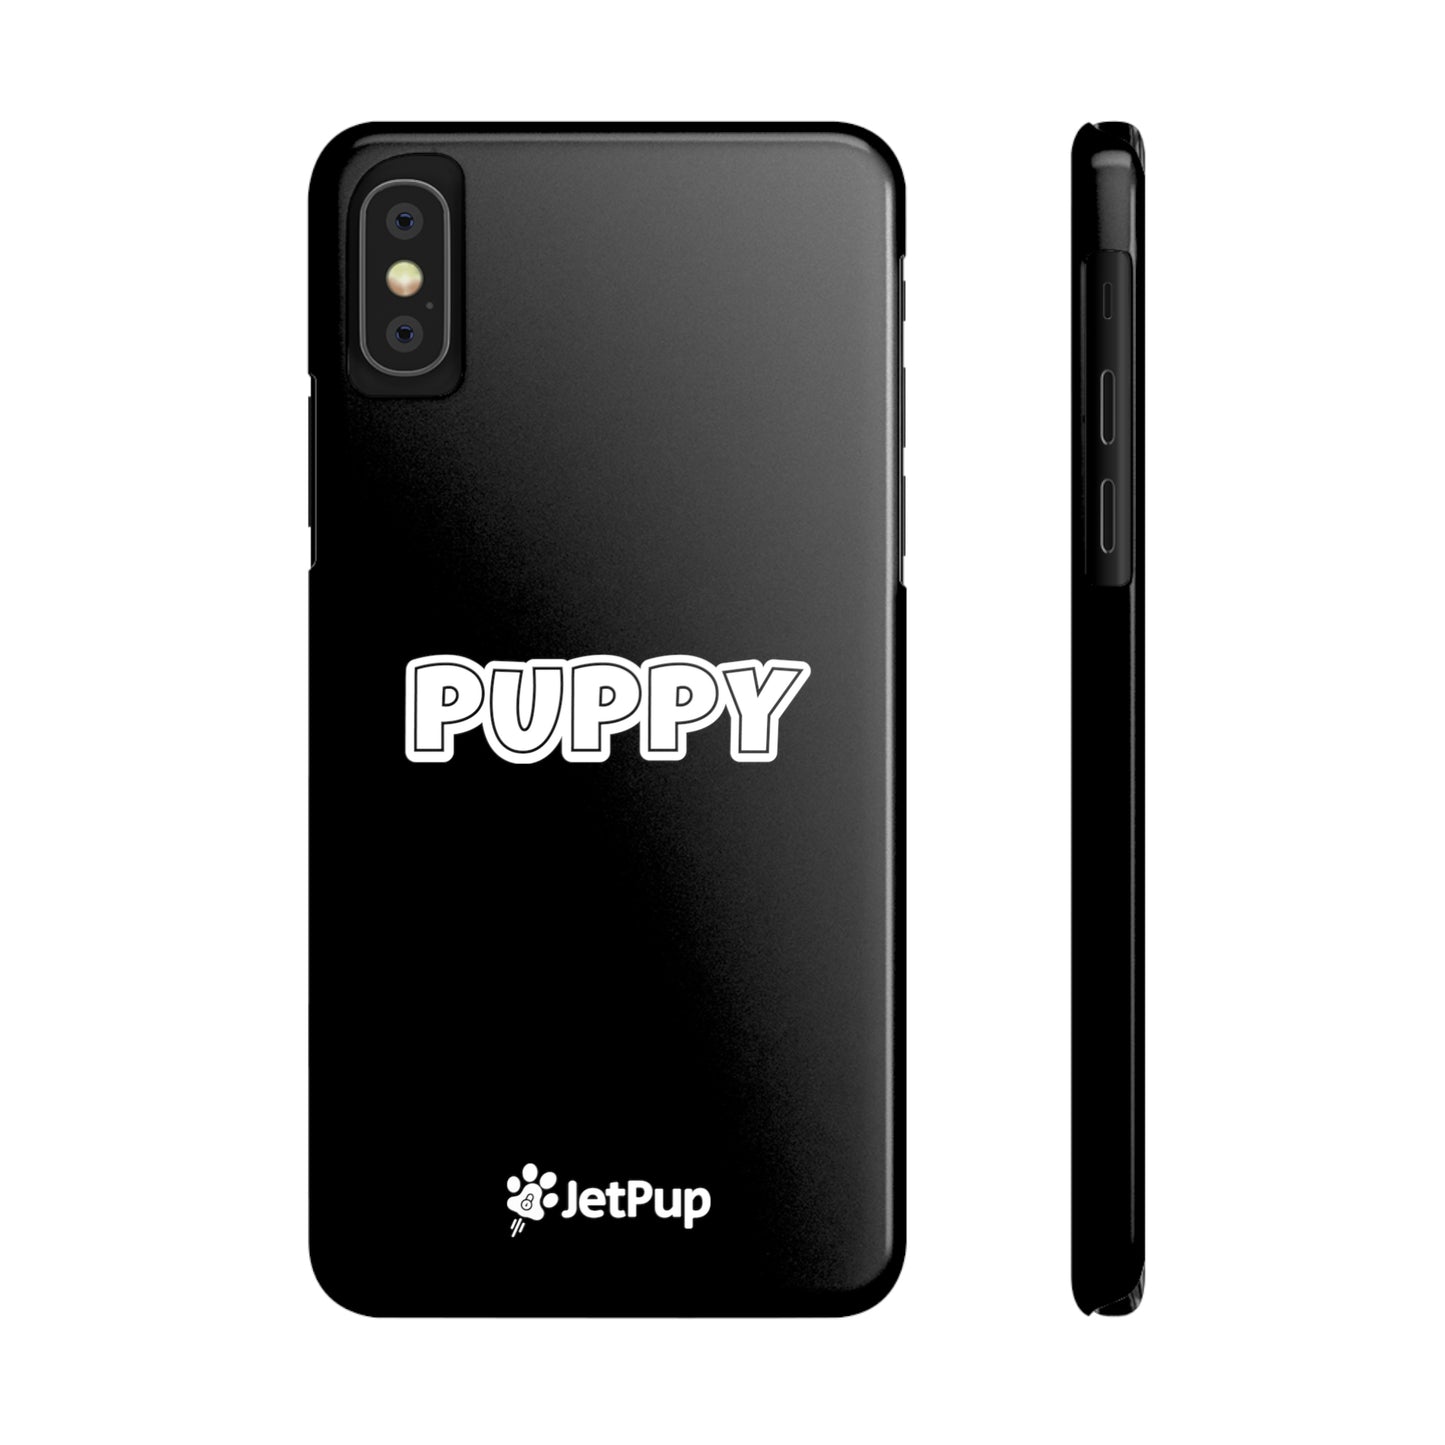 Puppy Slim iPhone Cases - Black